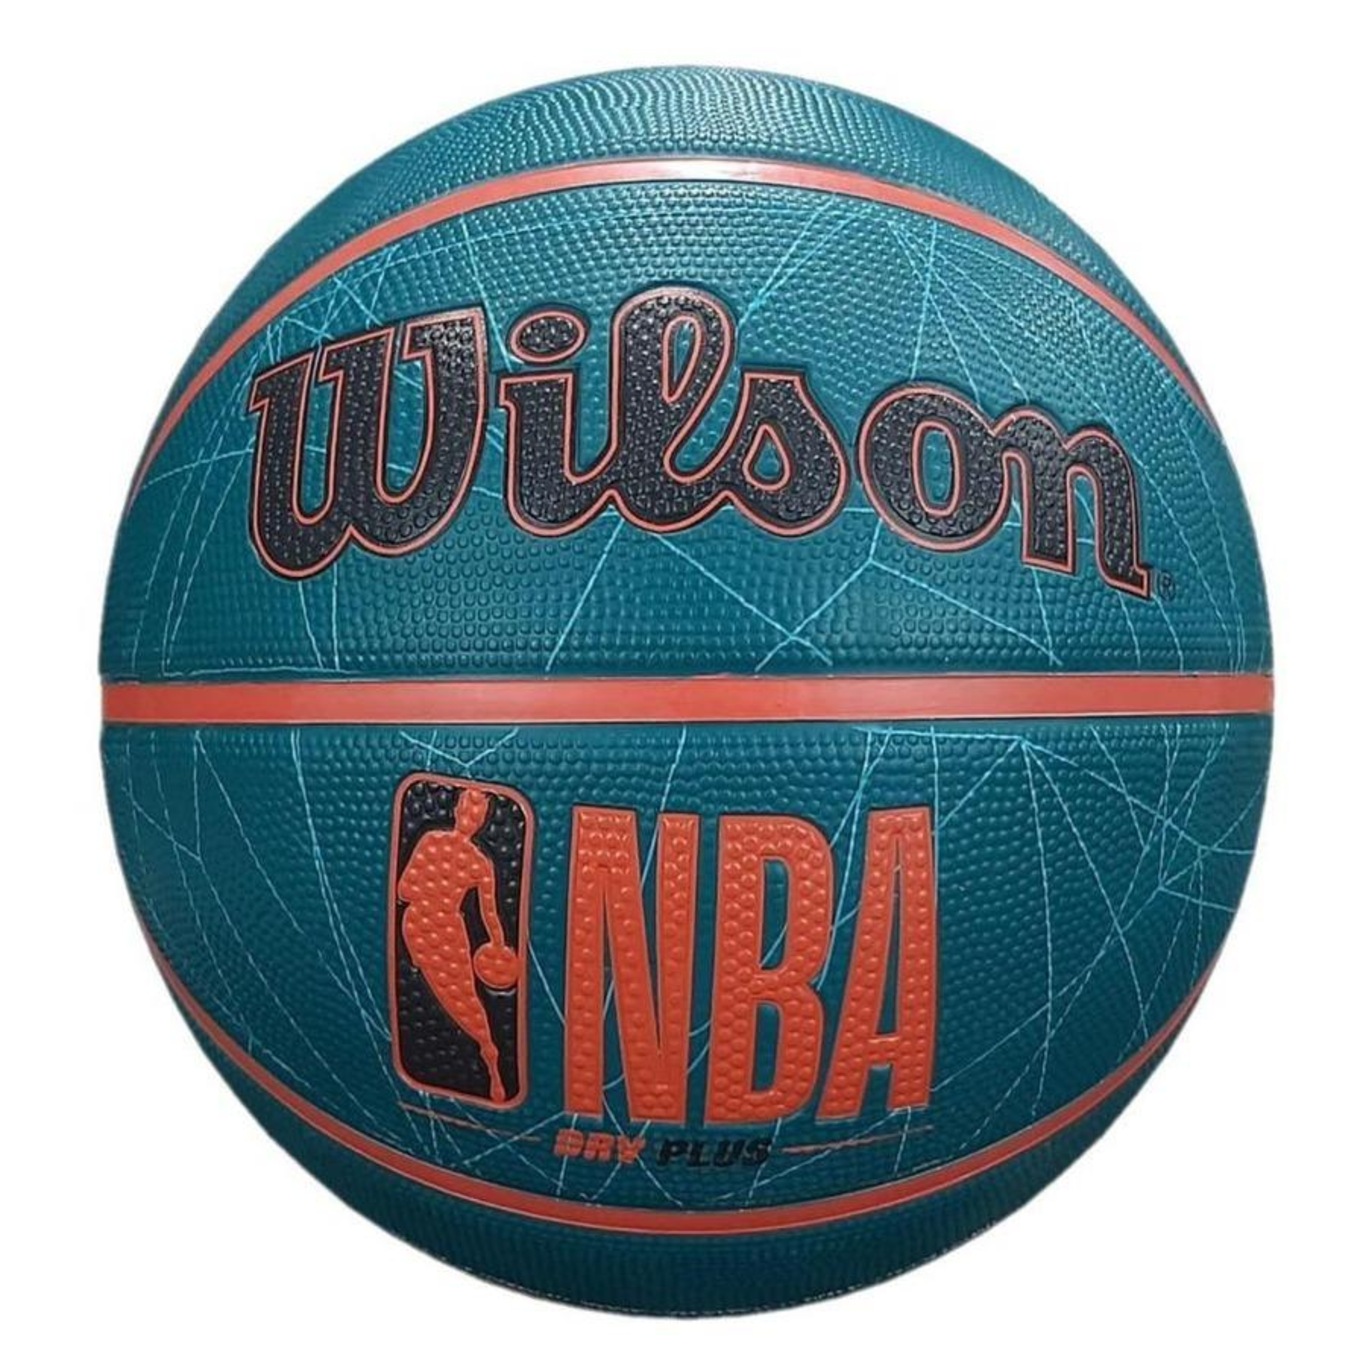 Bola de Basquete NBA DRV #7 - Wilson